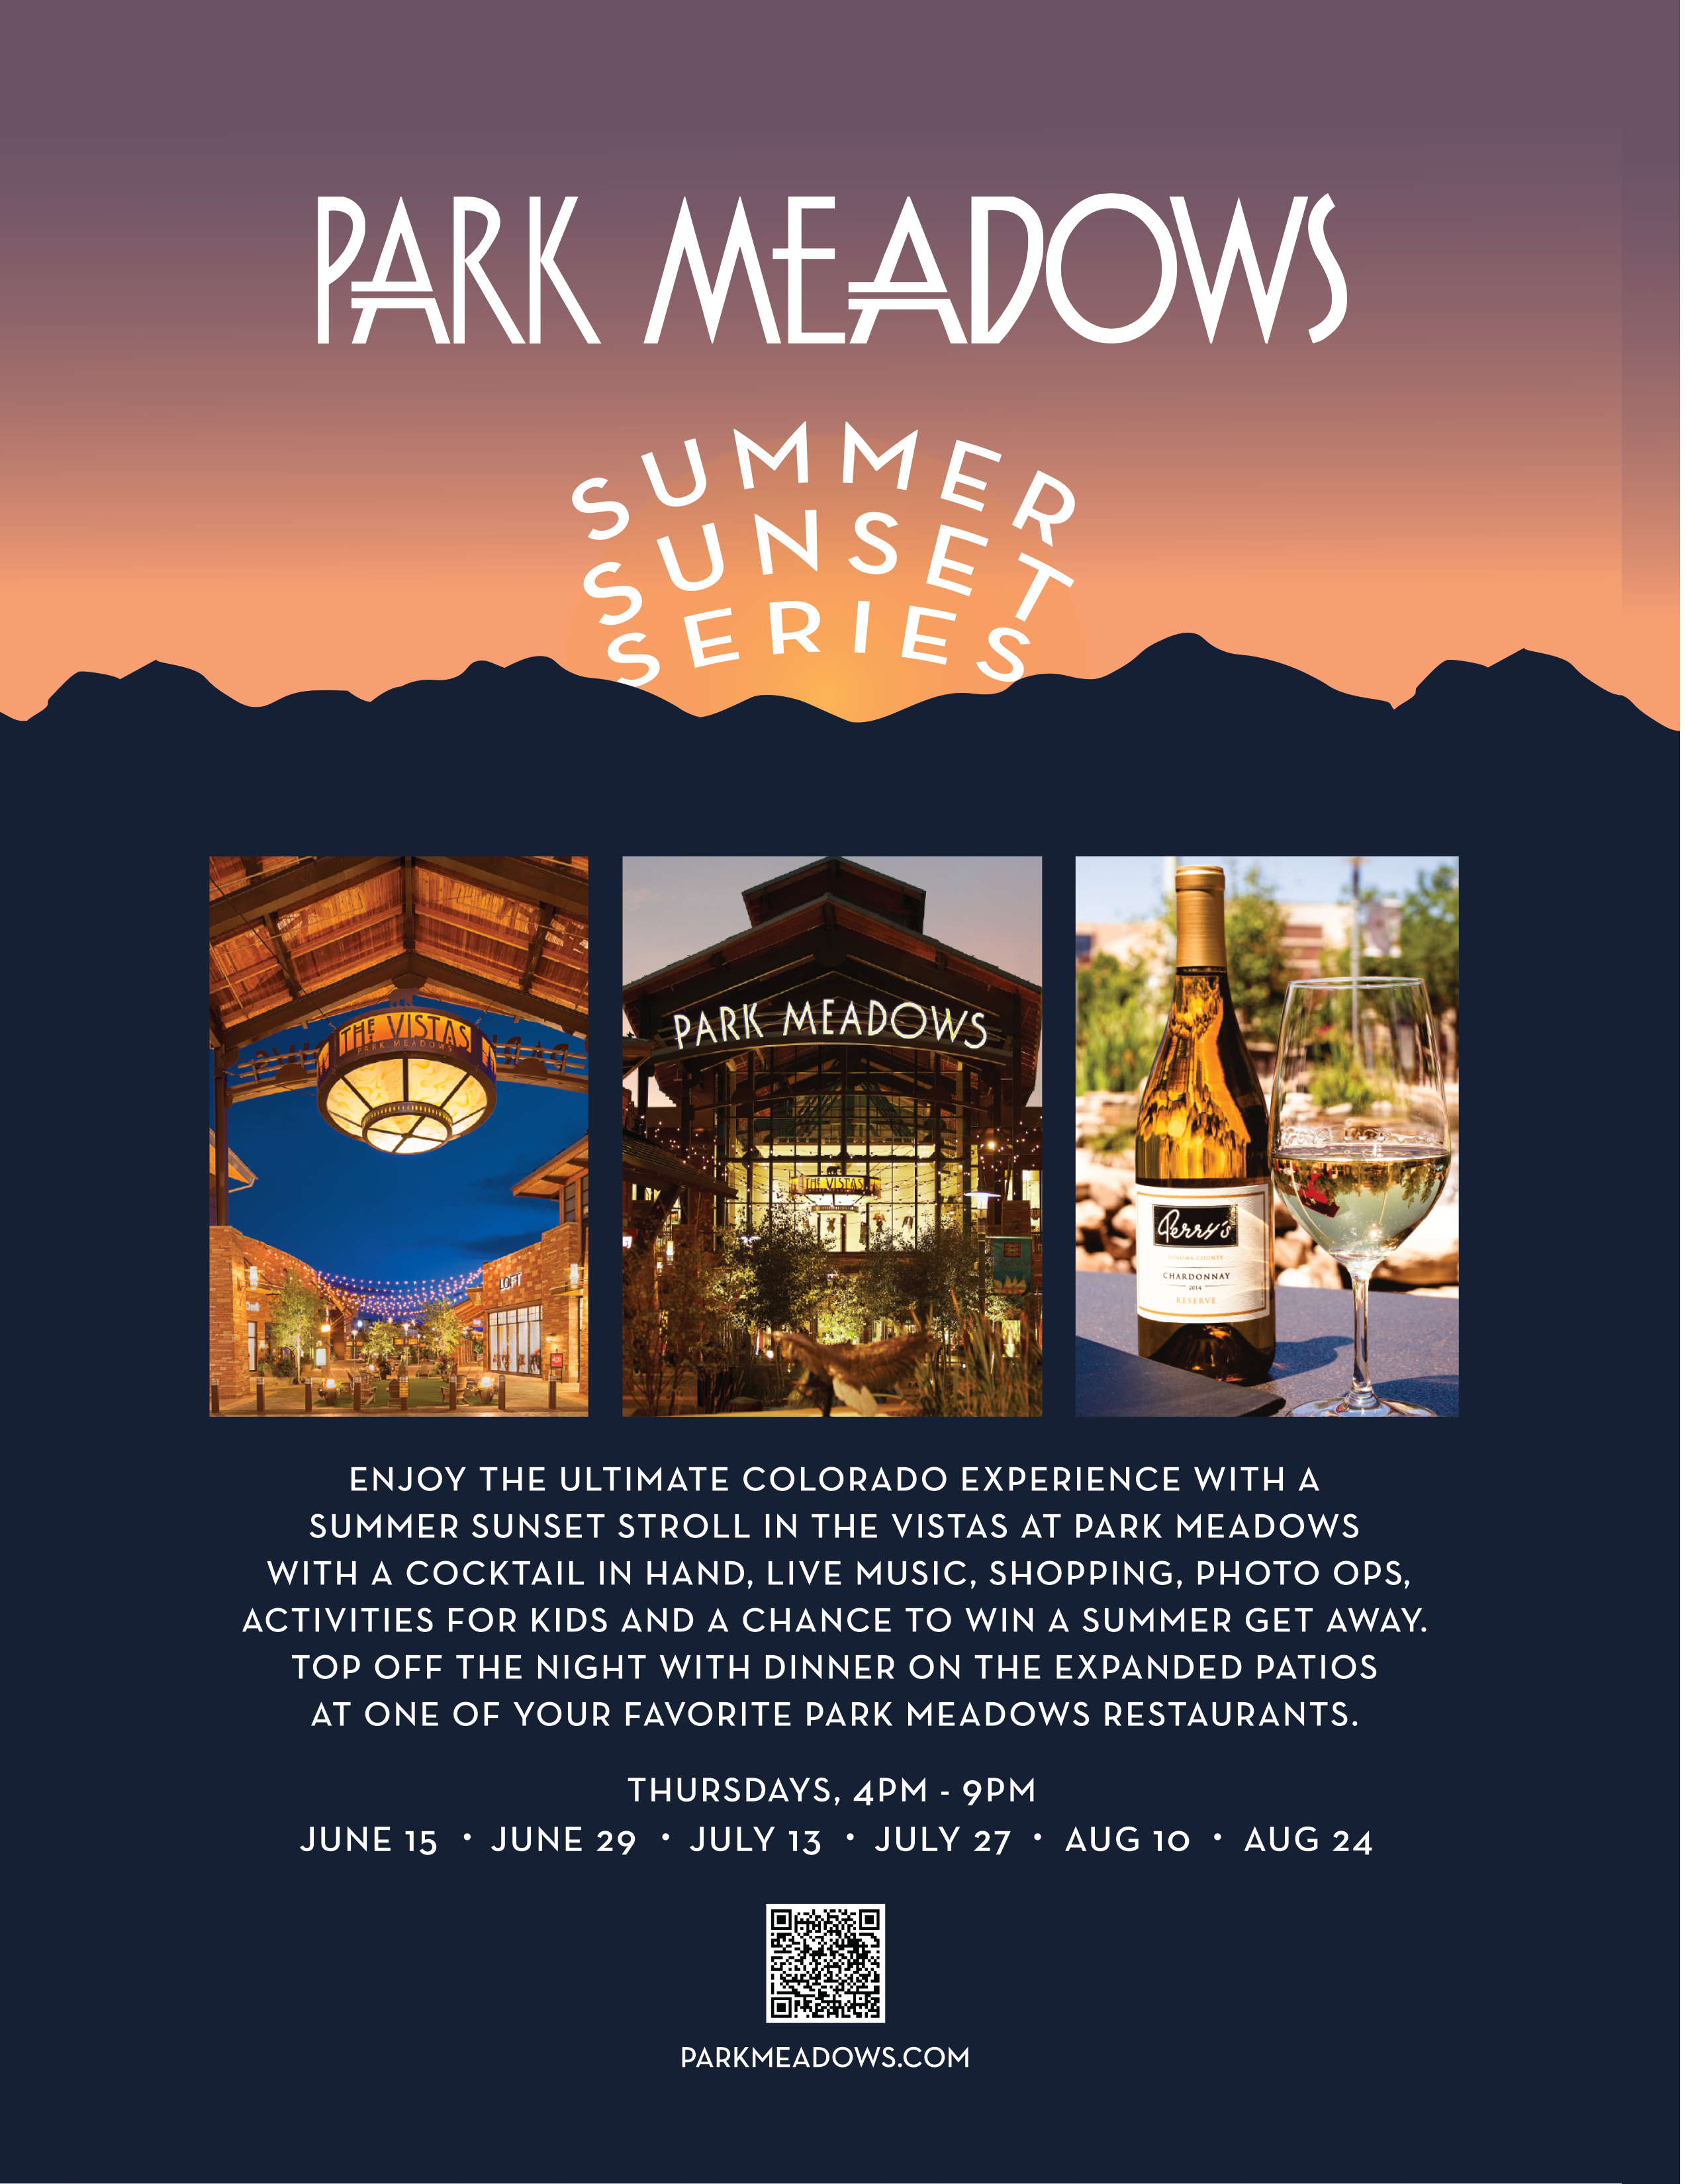 Park Meadows Summer Sunset Series